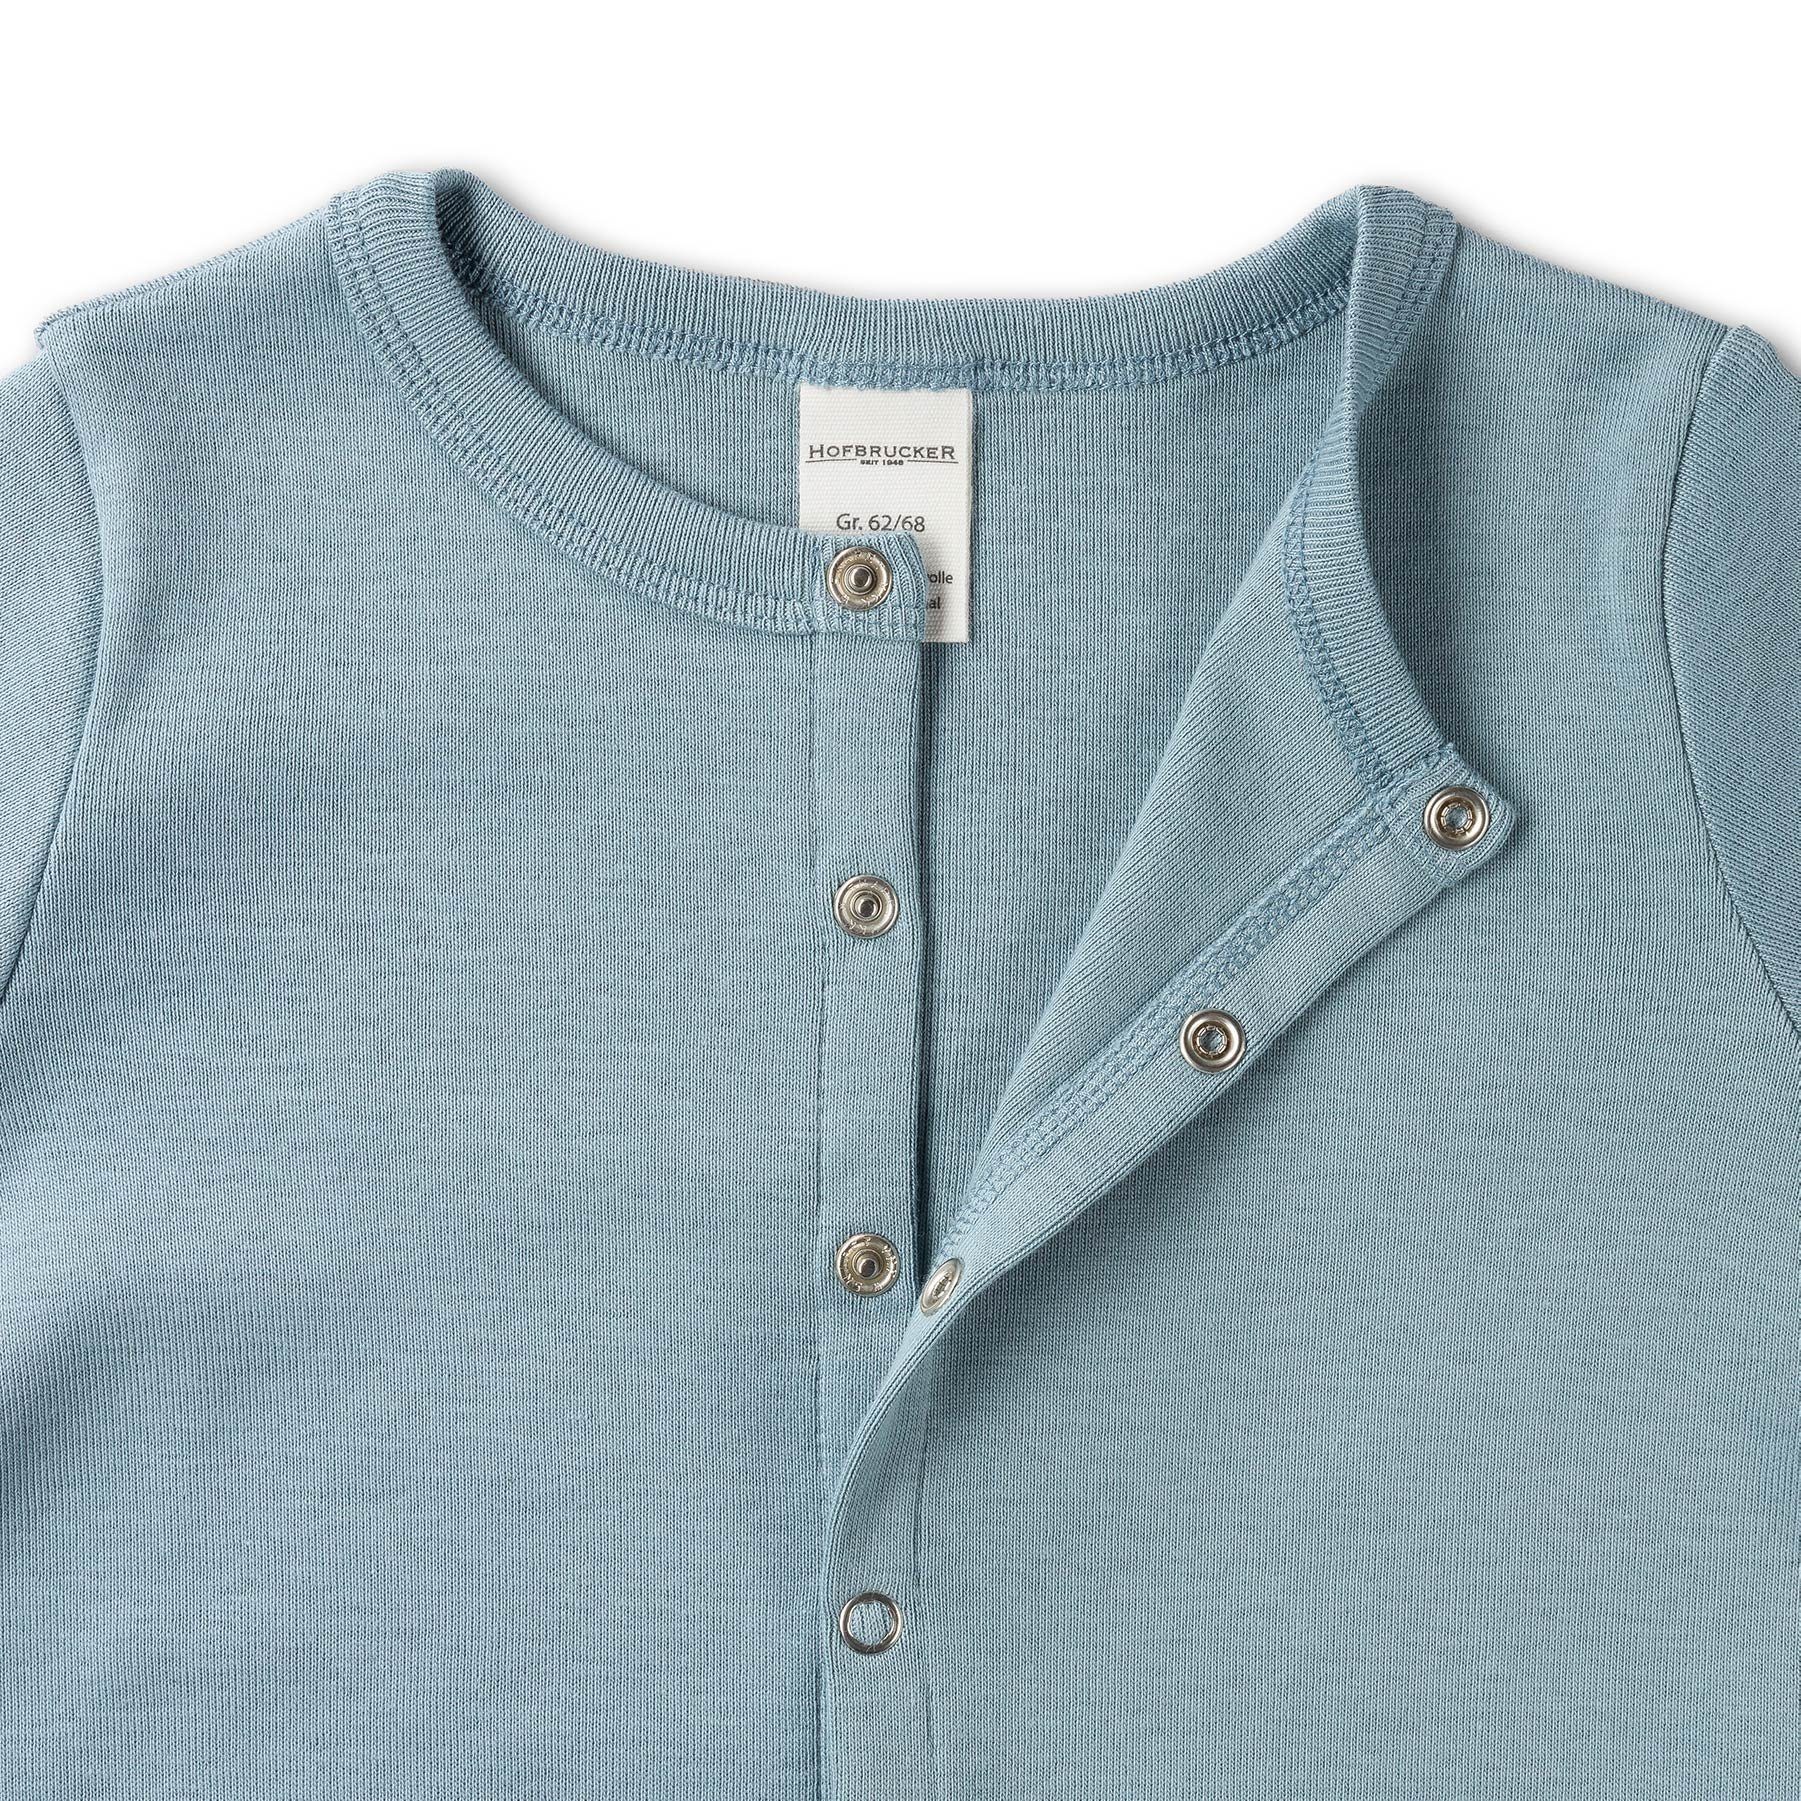 Baby Hofbrucker MINA Schlafanzug Taubenblau 1948 Schlafanzug seit